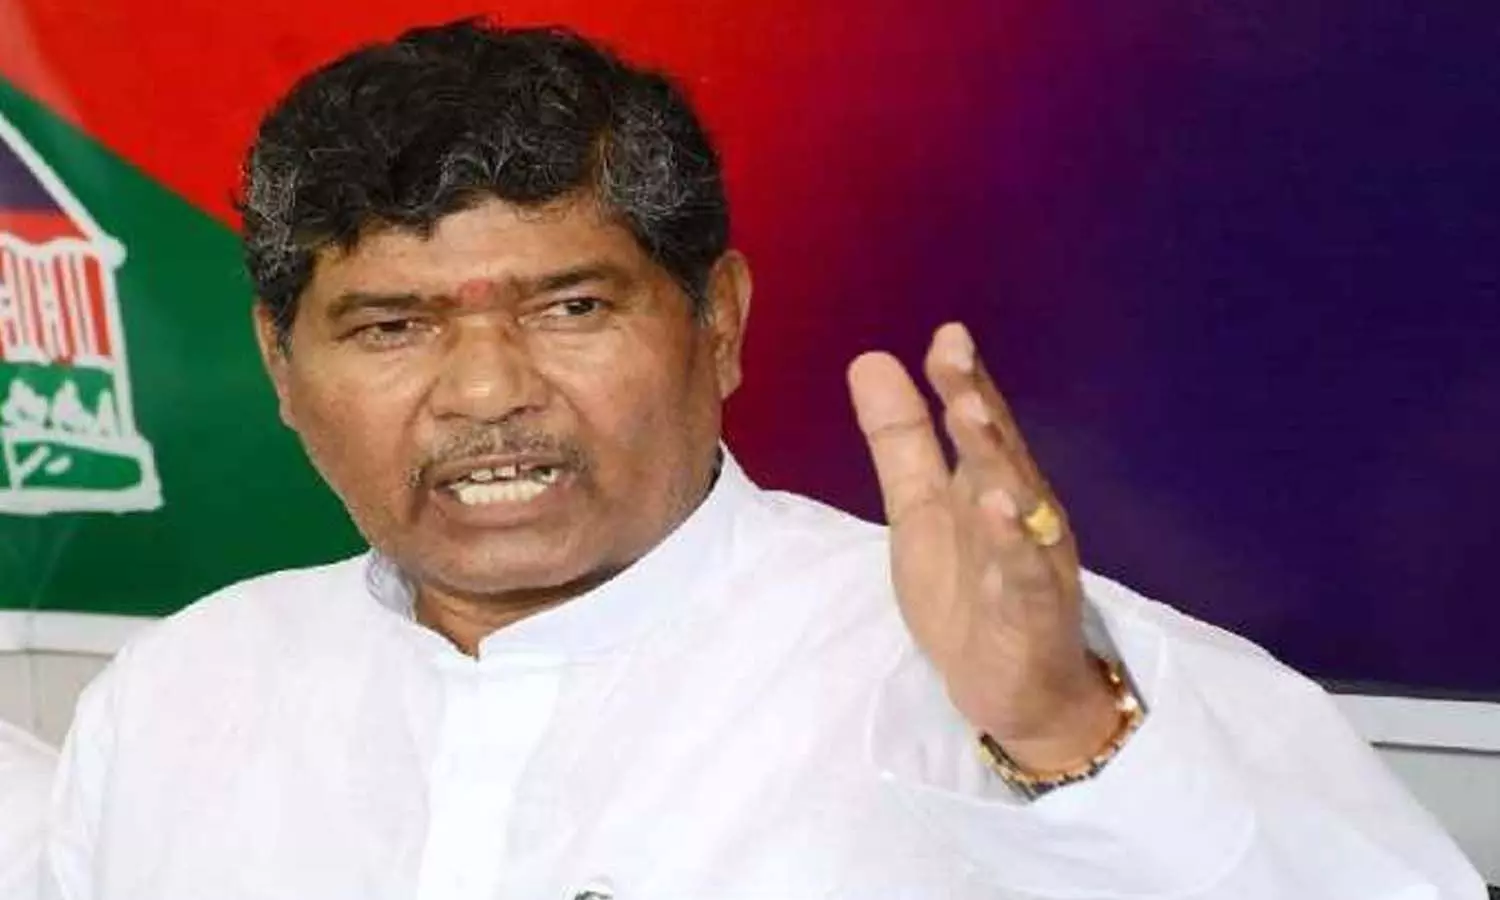 Bihar News: हाजीपुर में पशुपति पारस का विरोध, चिराग समर्थक ने फेंकी स्याही